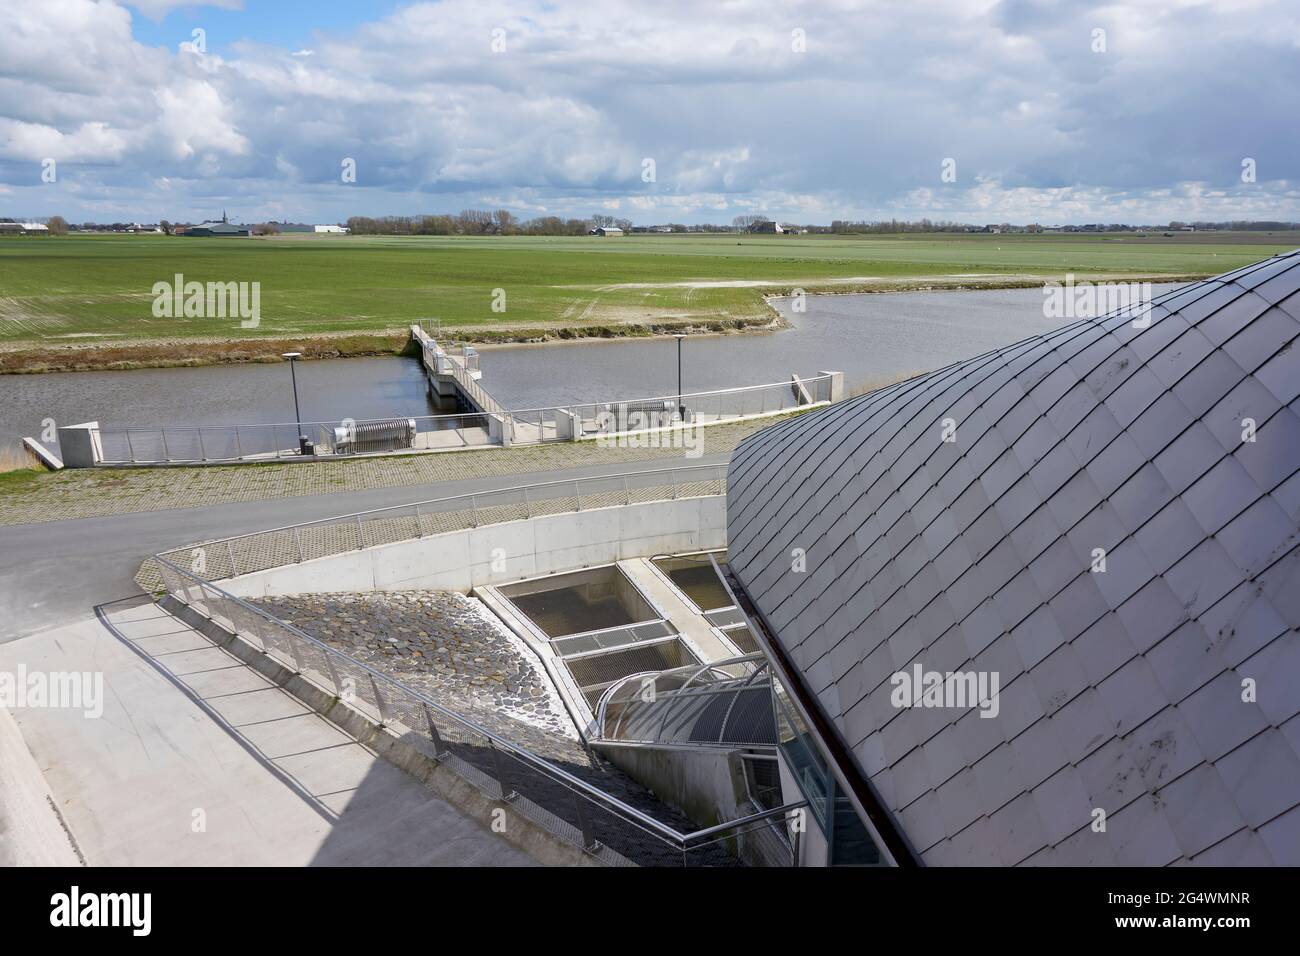 De Heining è una stazione di pompaggio sul lungomare vicino a Marrum. Scarica l'acqua nel mare di Wadden e dispone di un passaggio per i pesci migratori. Foto Stock